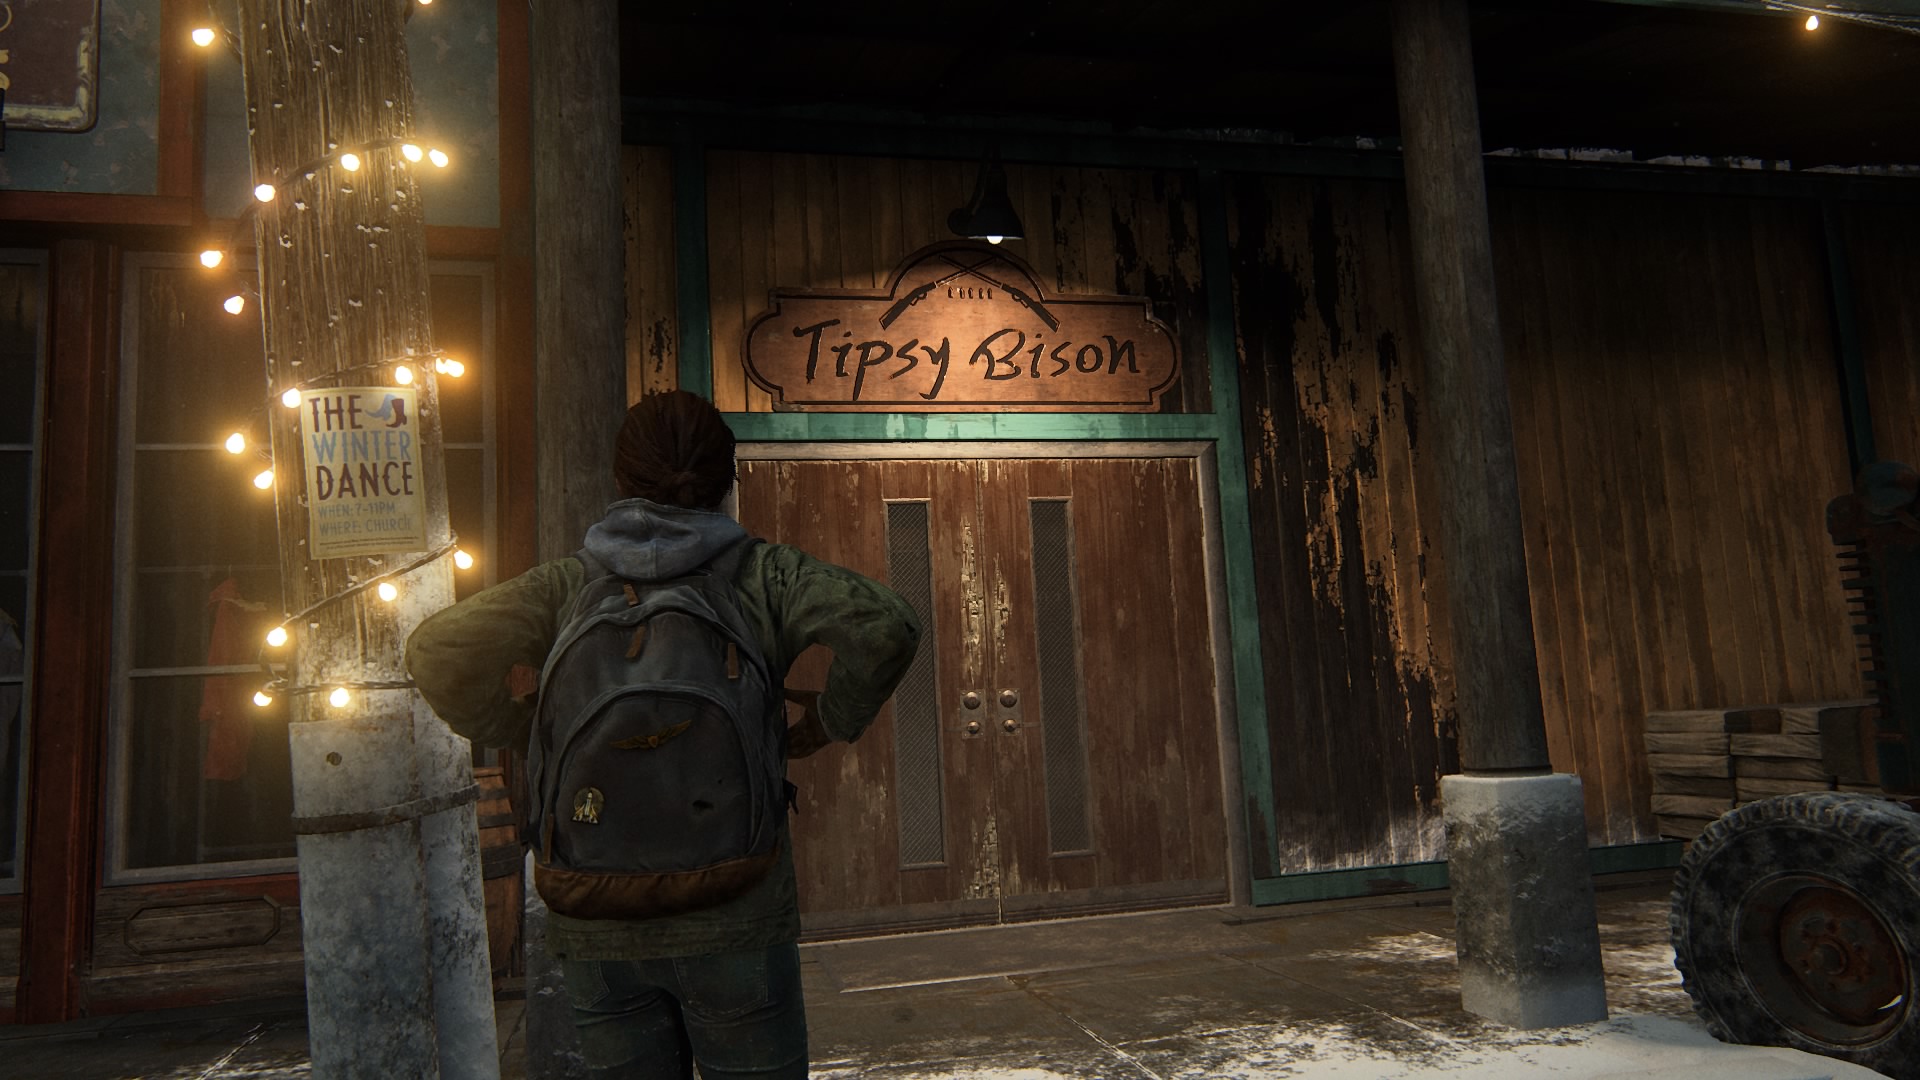 Das Tipsy Bison Ist Der Lokale Treffpunkt.